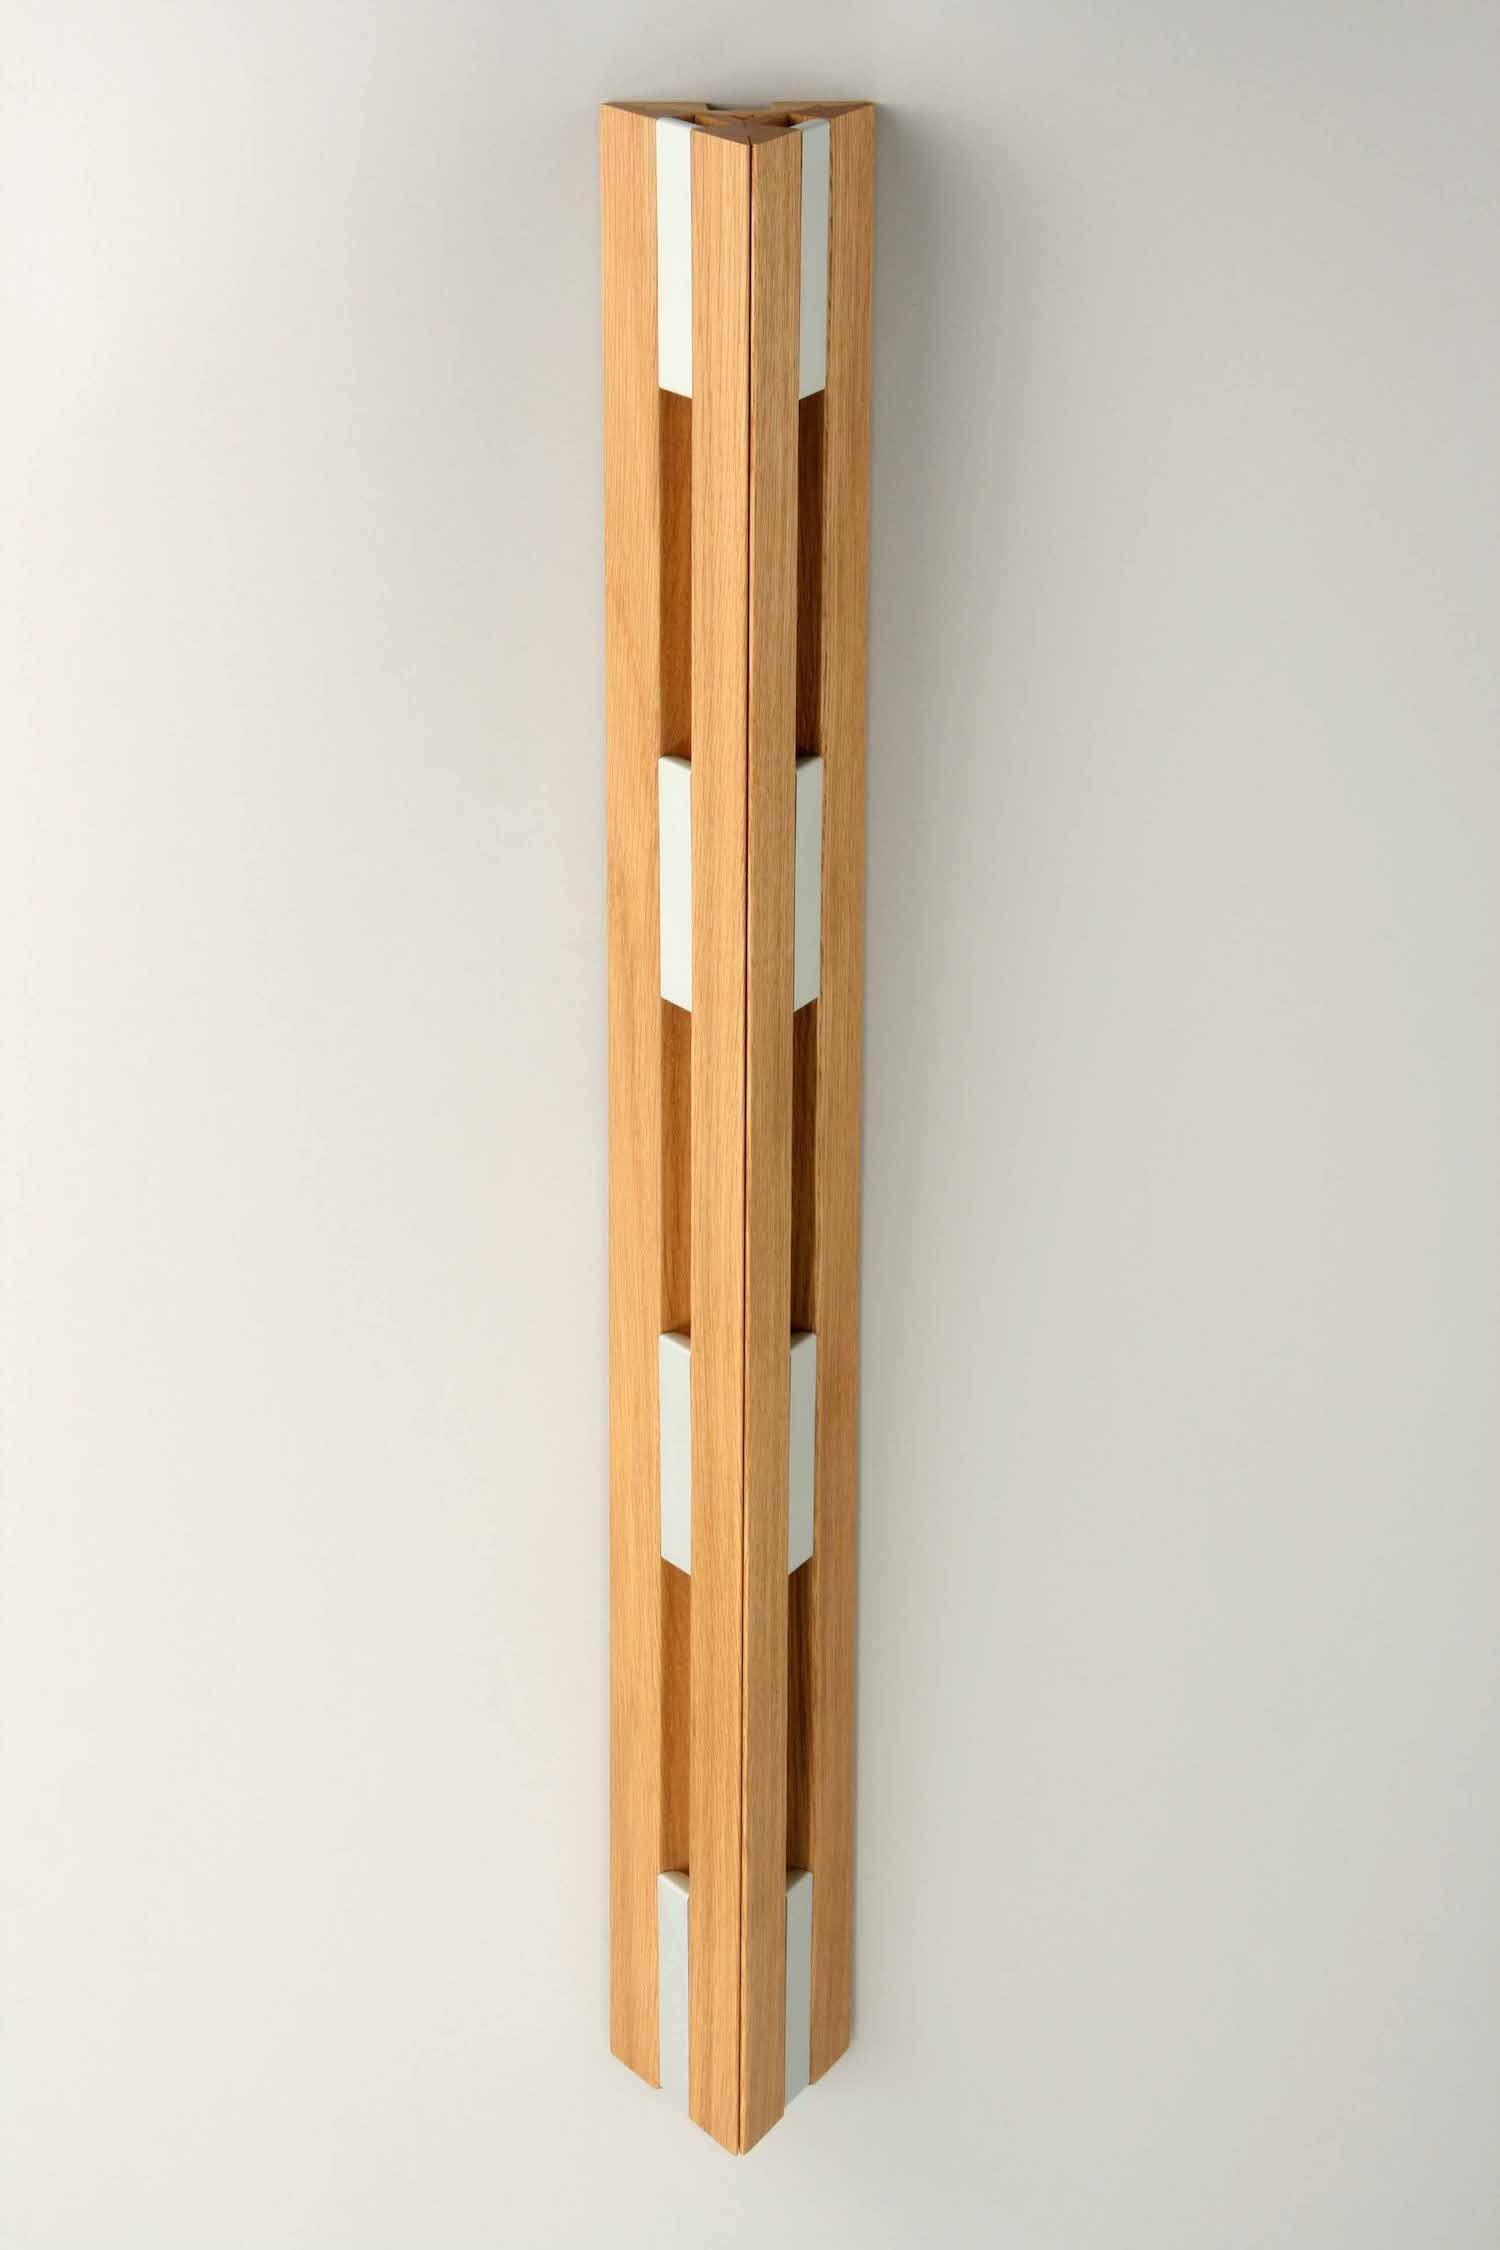 Vertikaler Garderobenständer für die Wandmontage. 8 Metallhaken. Modernes Design in Holz